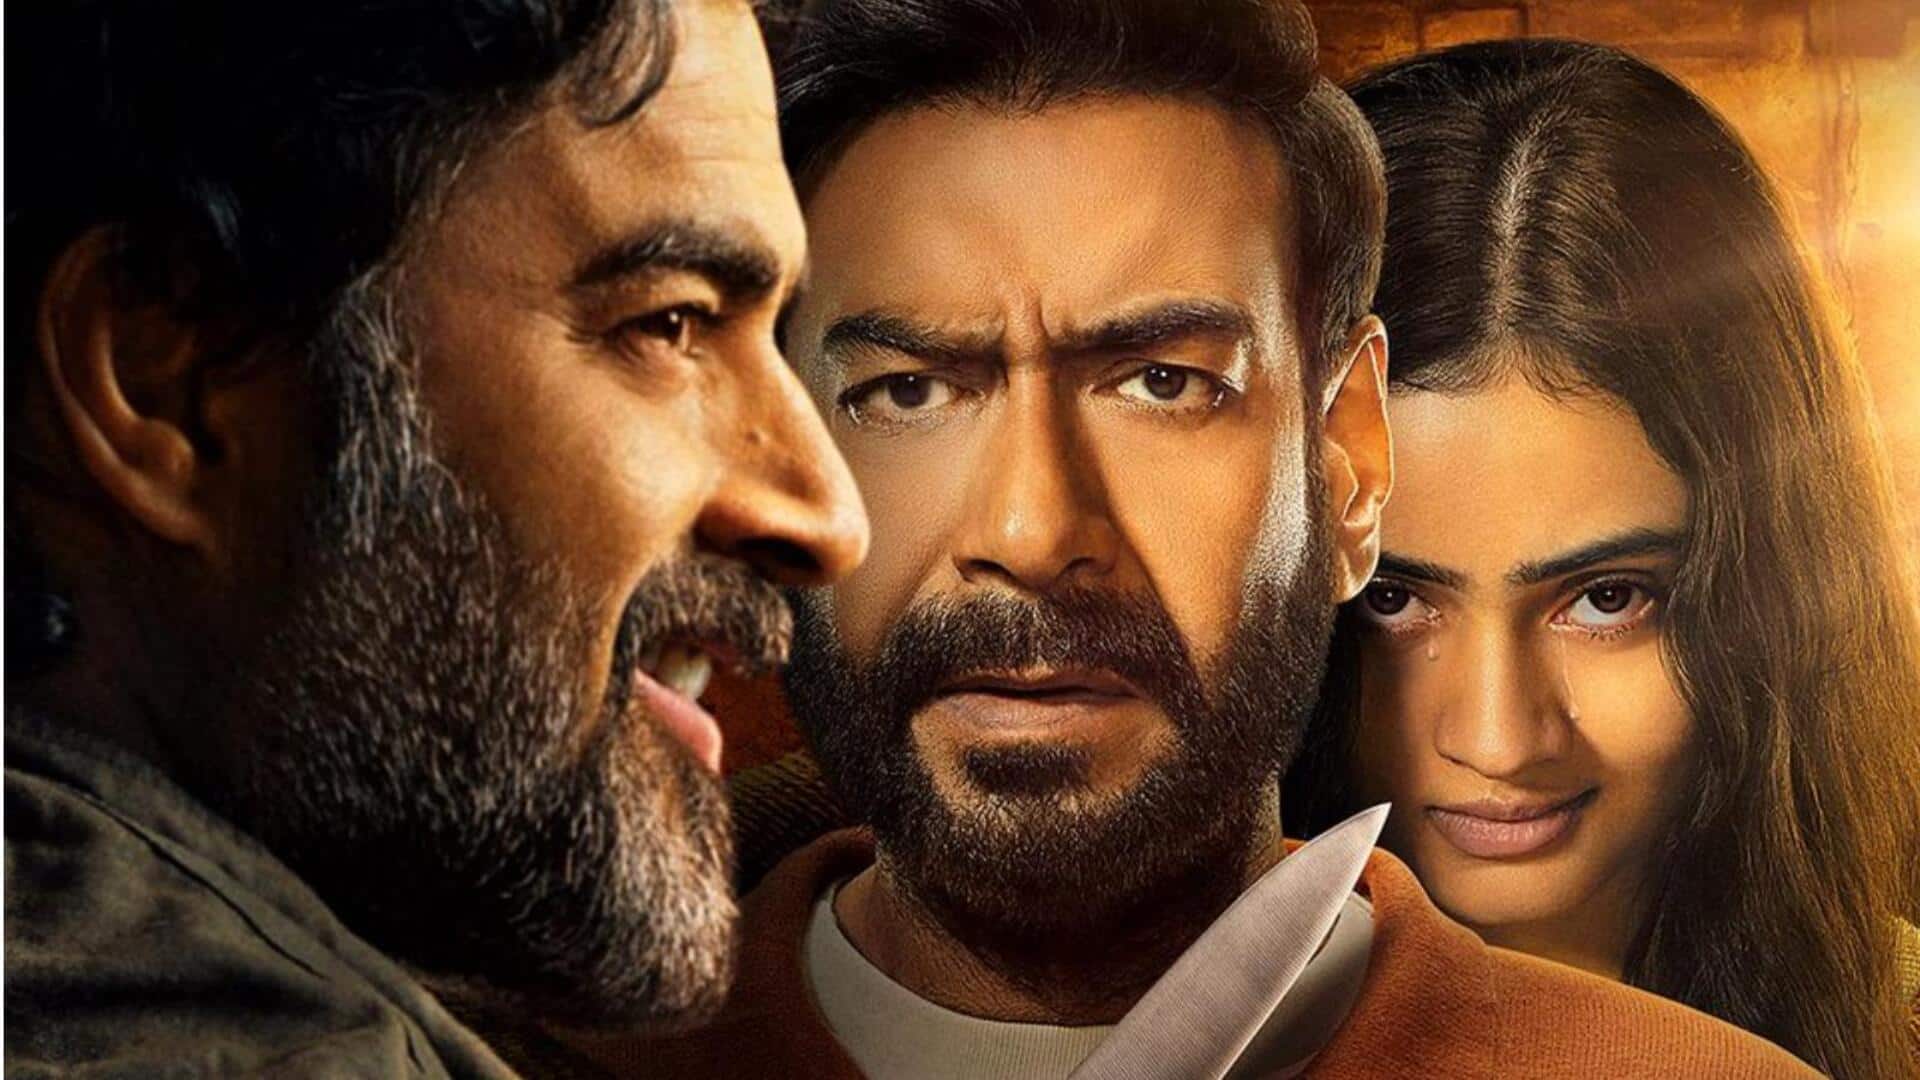 अजय देवगन की 'शैतान' की एडवांस बुकिंग शुरू, जानिए कब रिलीज होगी फिल्म 